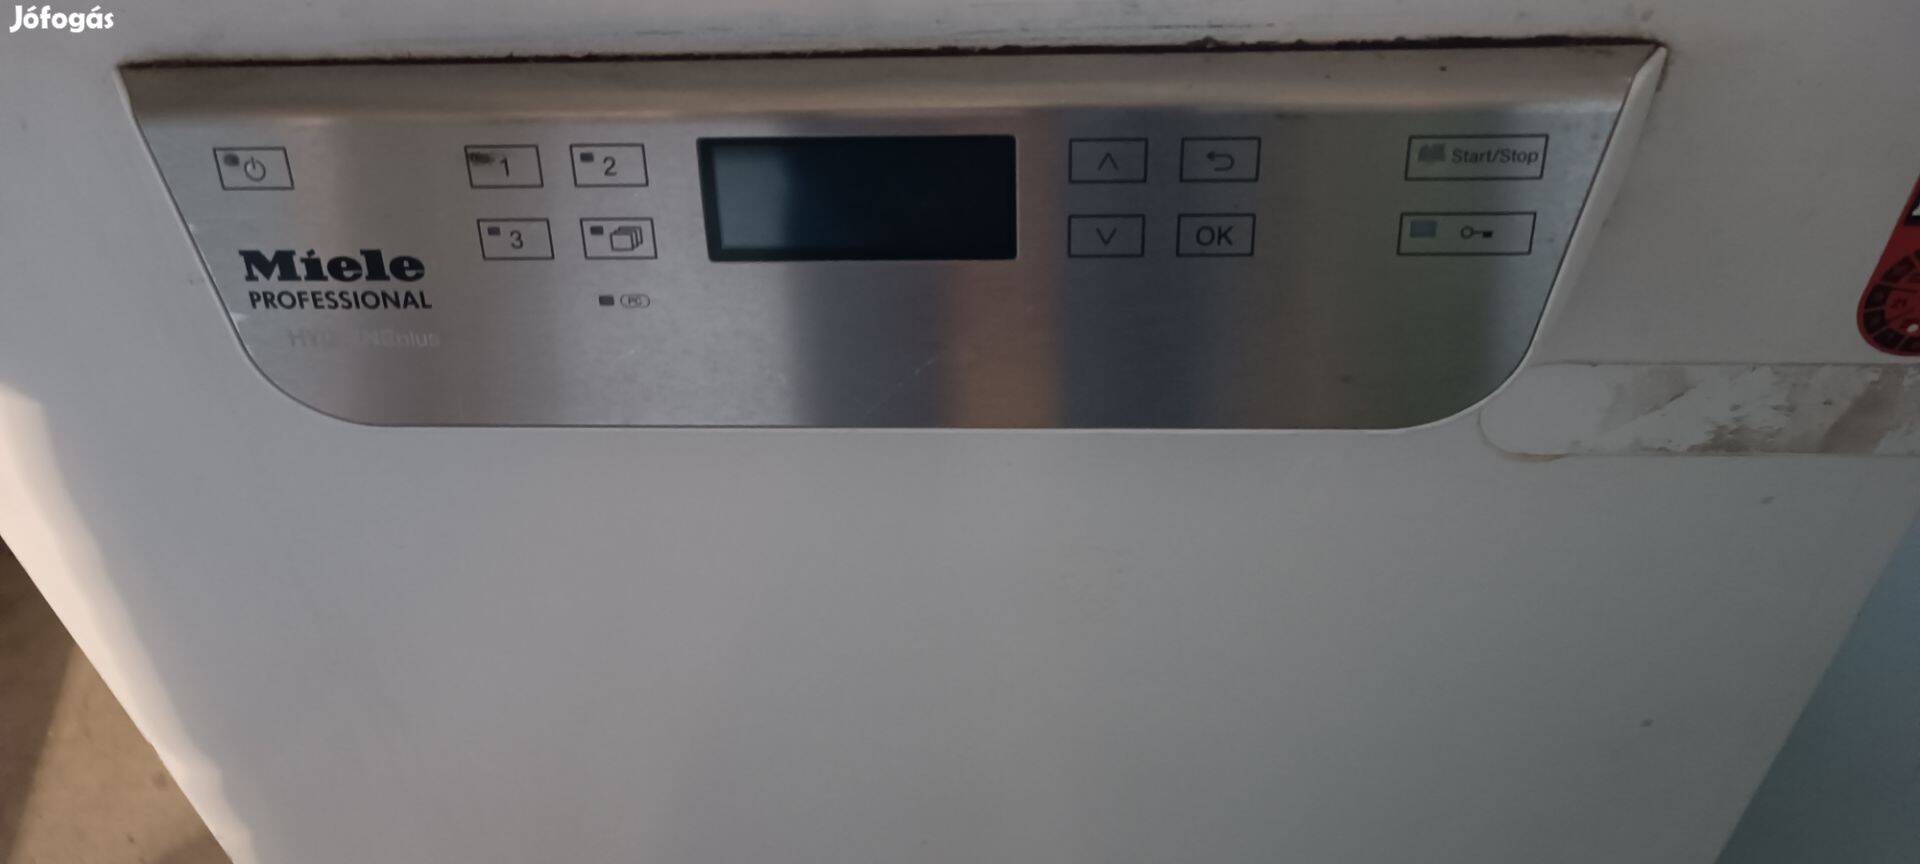 Ipari Miele mosogatógép eladó